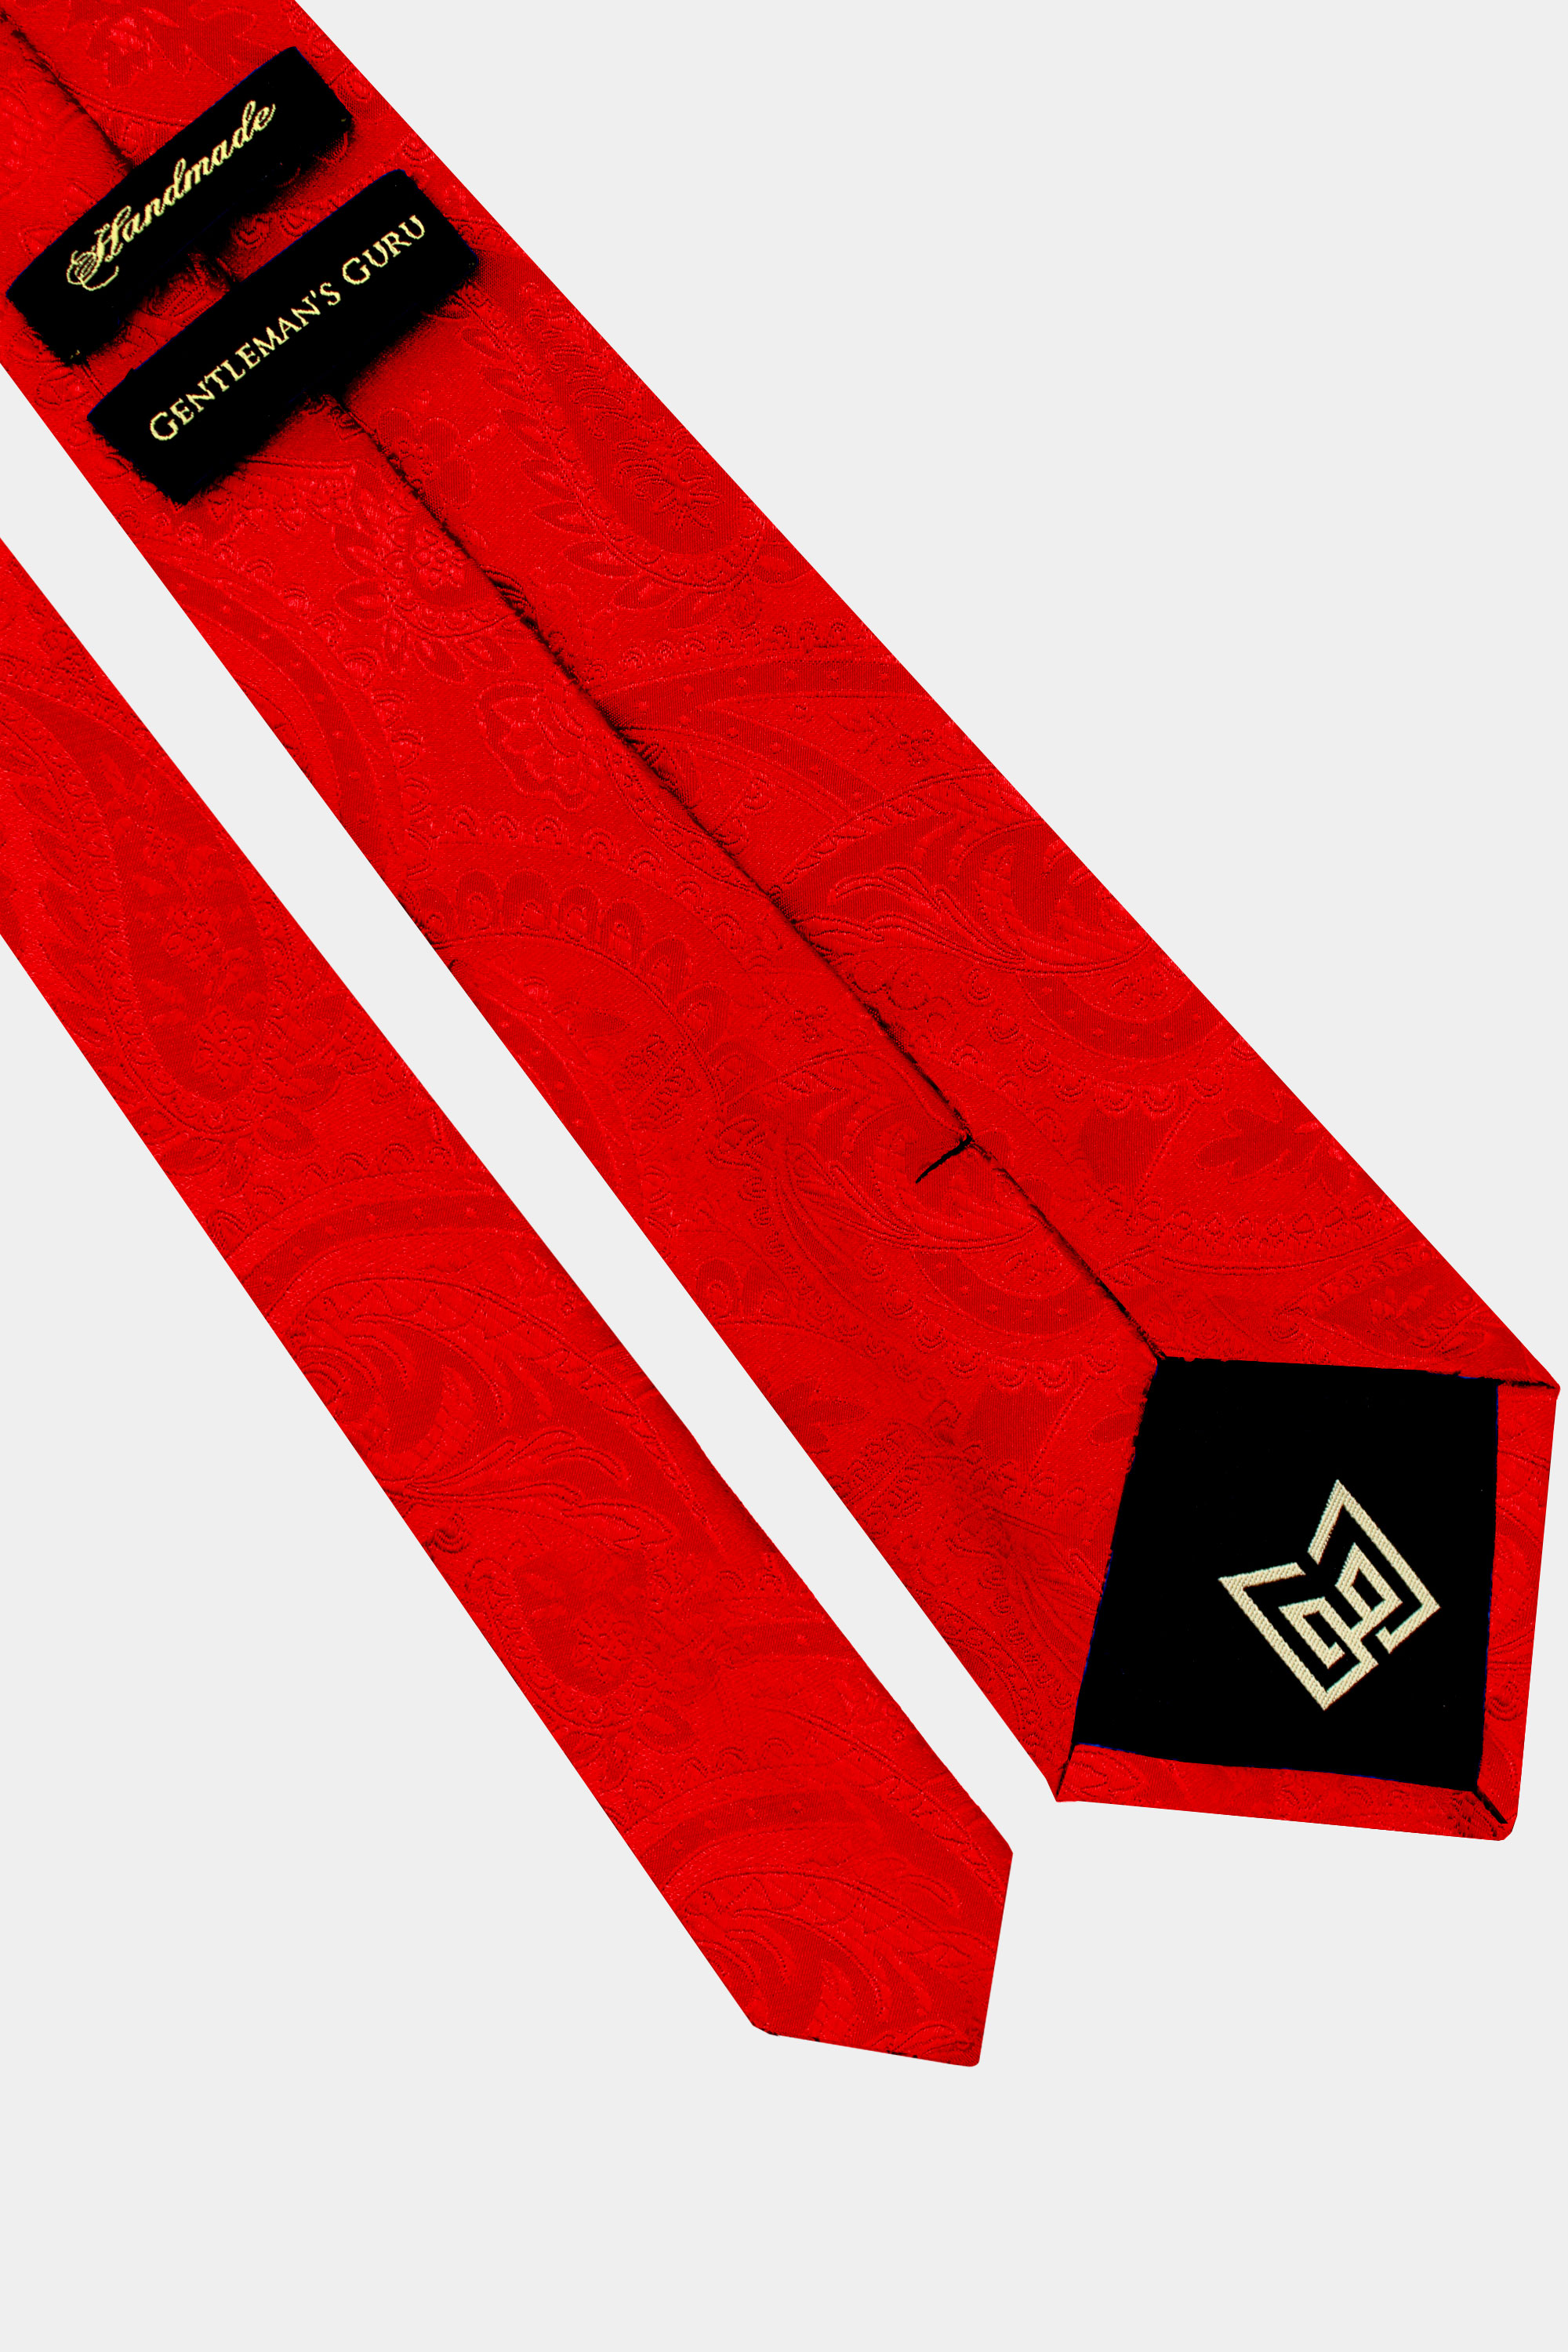 Red-Paisley-Tie-from-Gentlemansguru.com